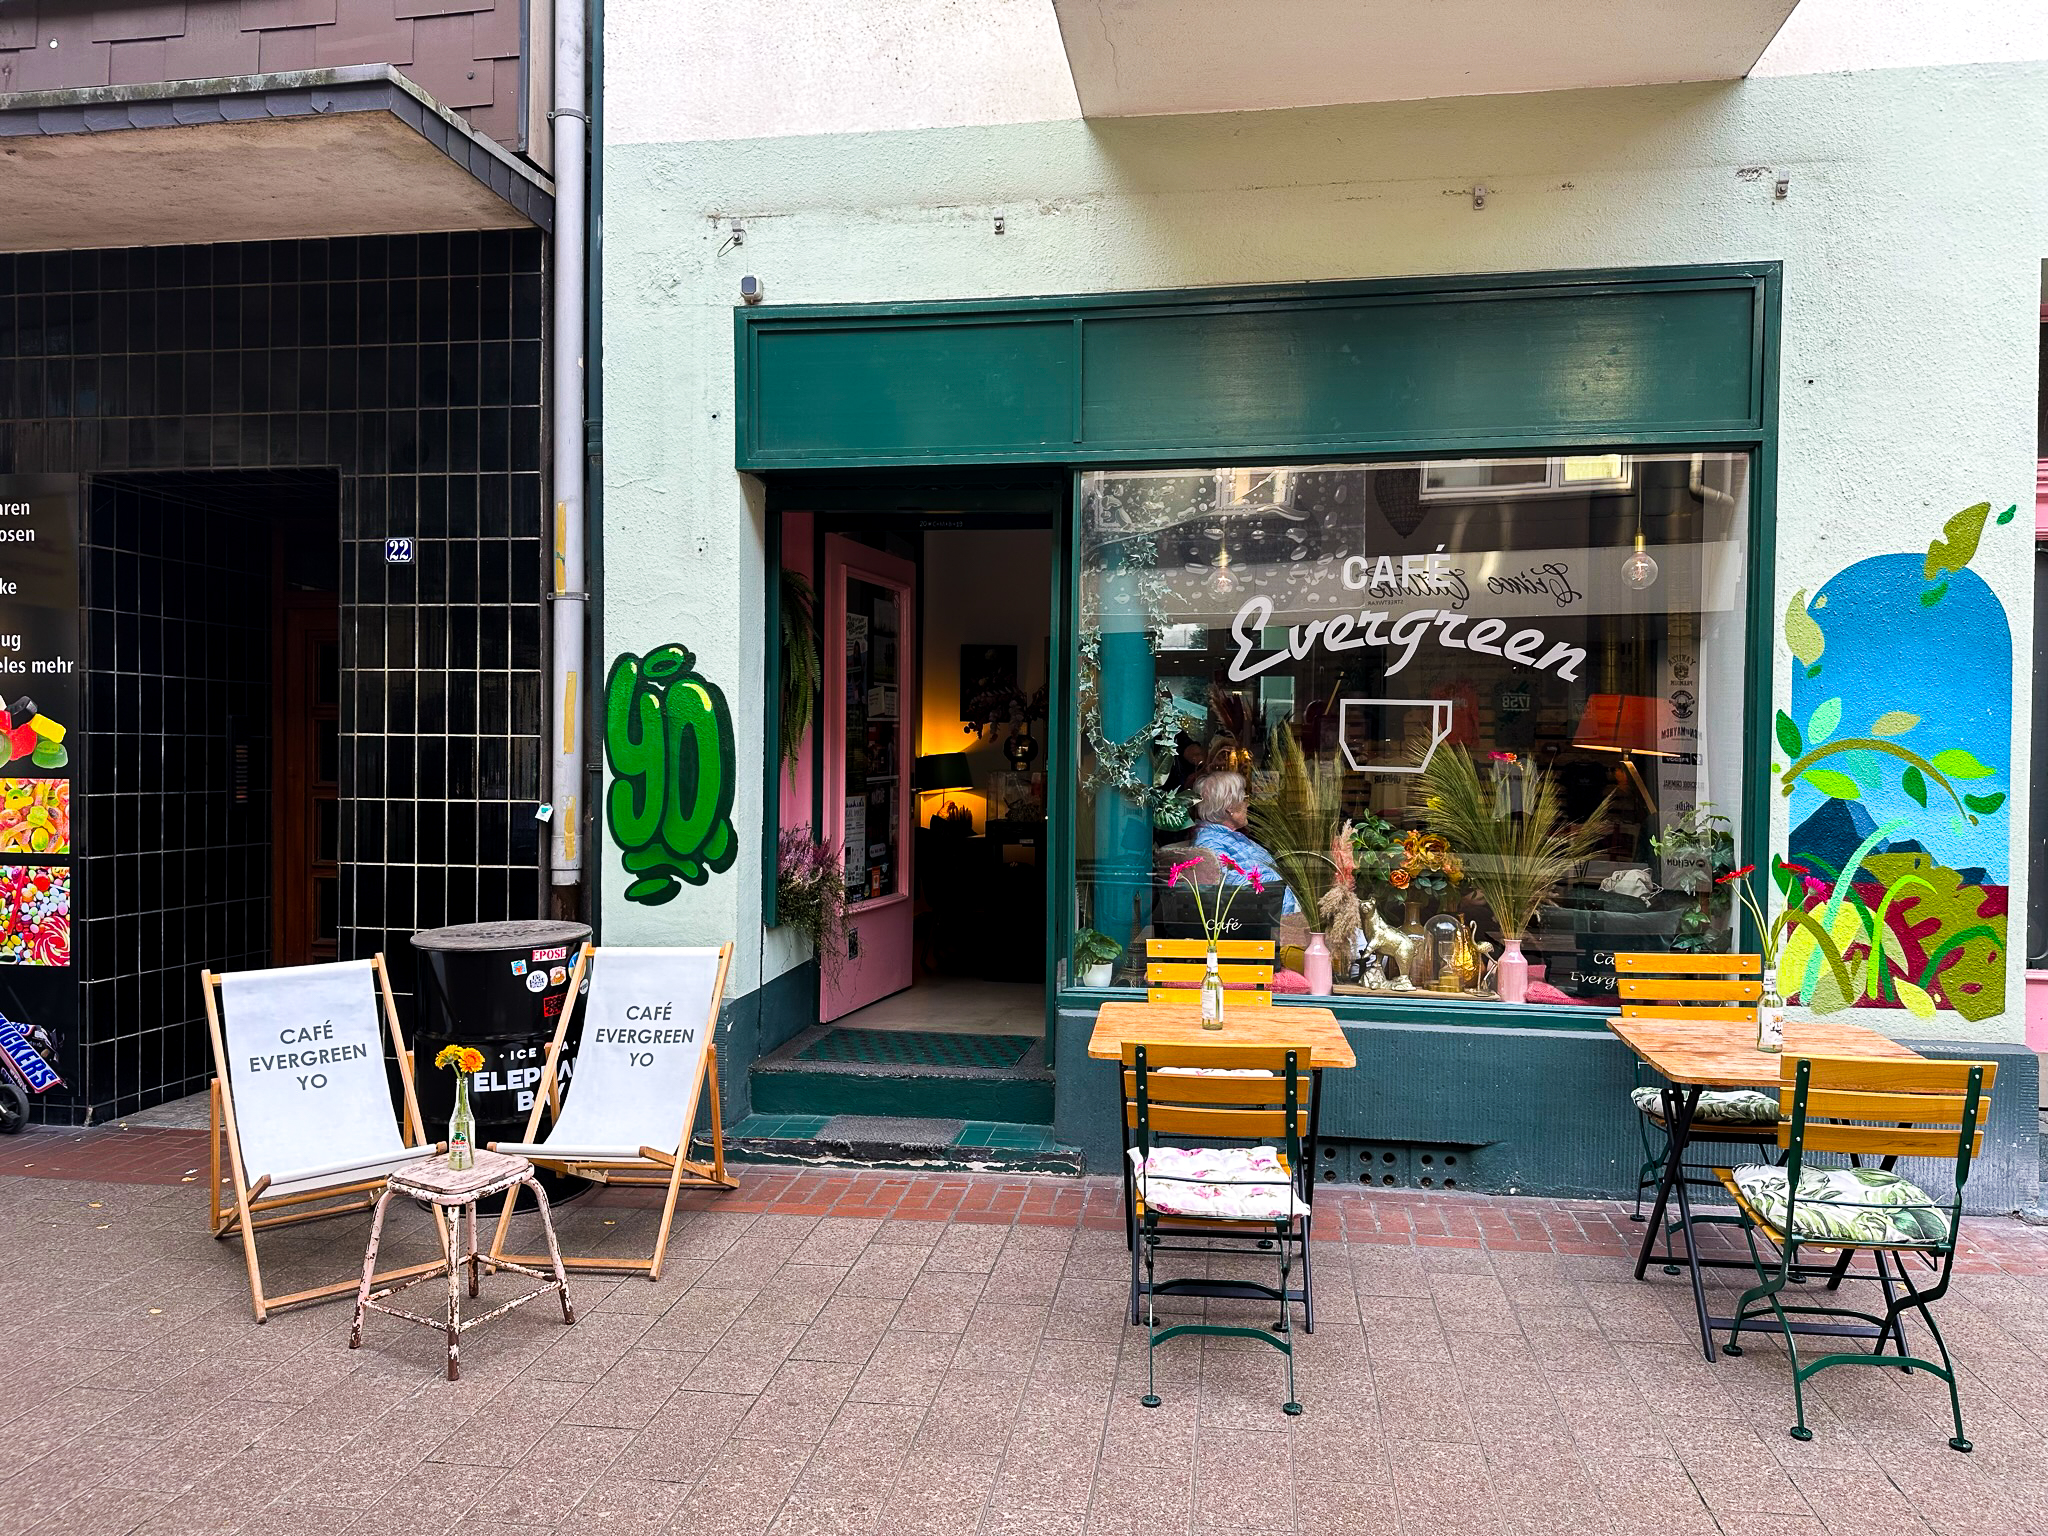 Das Foto zeigt das Café Evergreen im Dellviertel in Duisburg